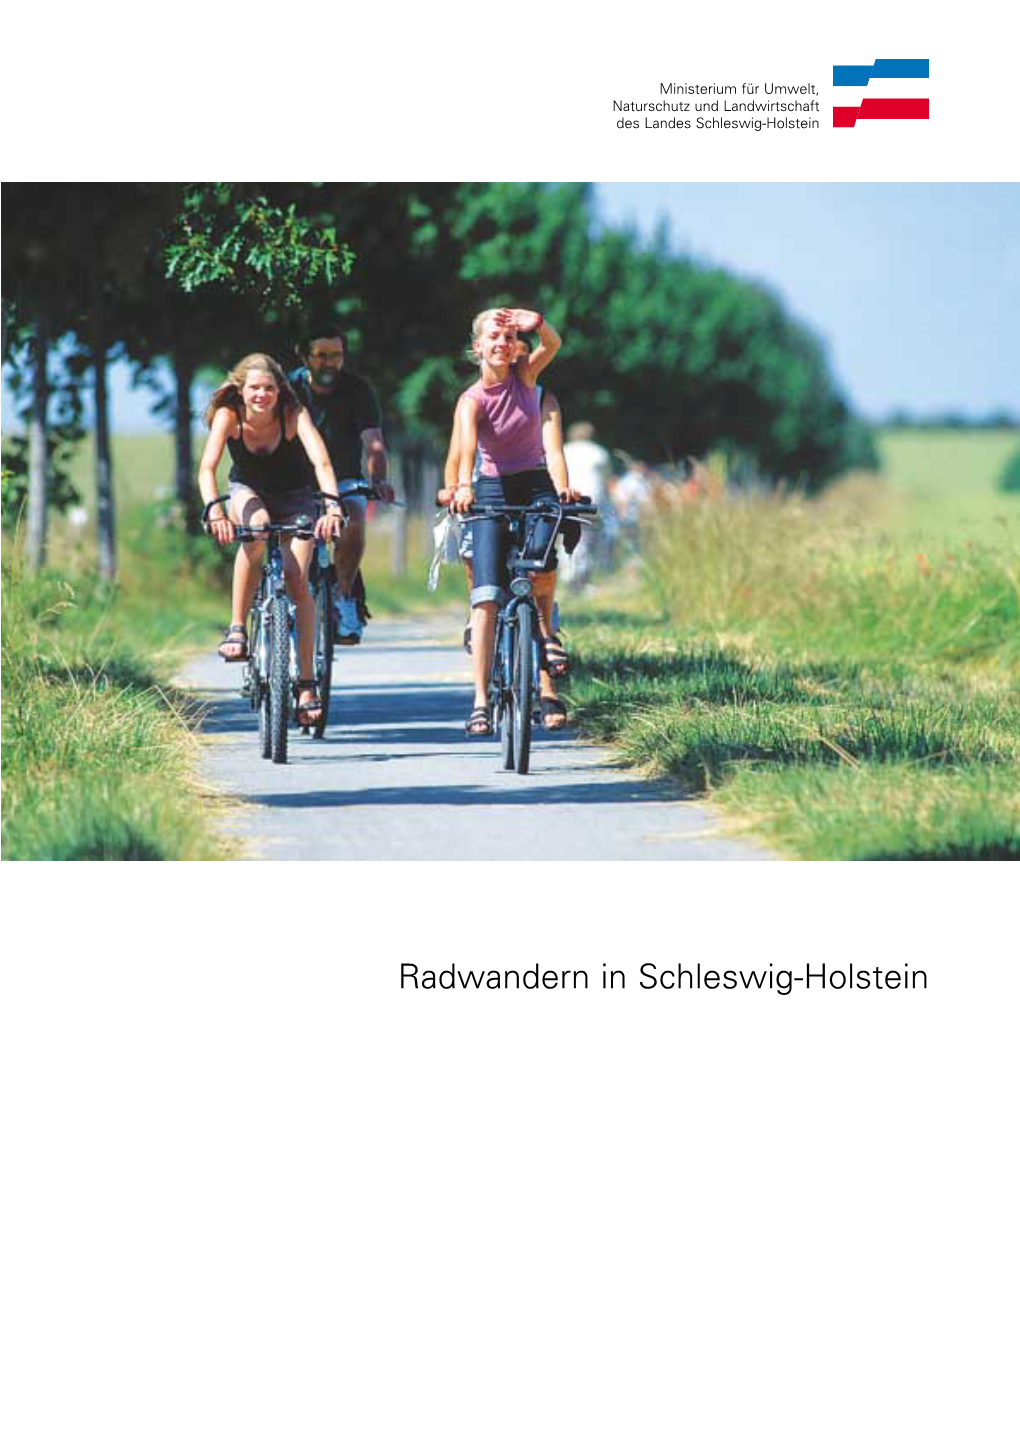 Radwandern in Schleswig-Holstein Impressum